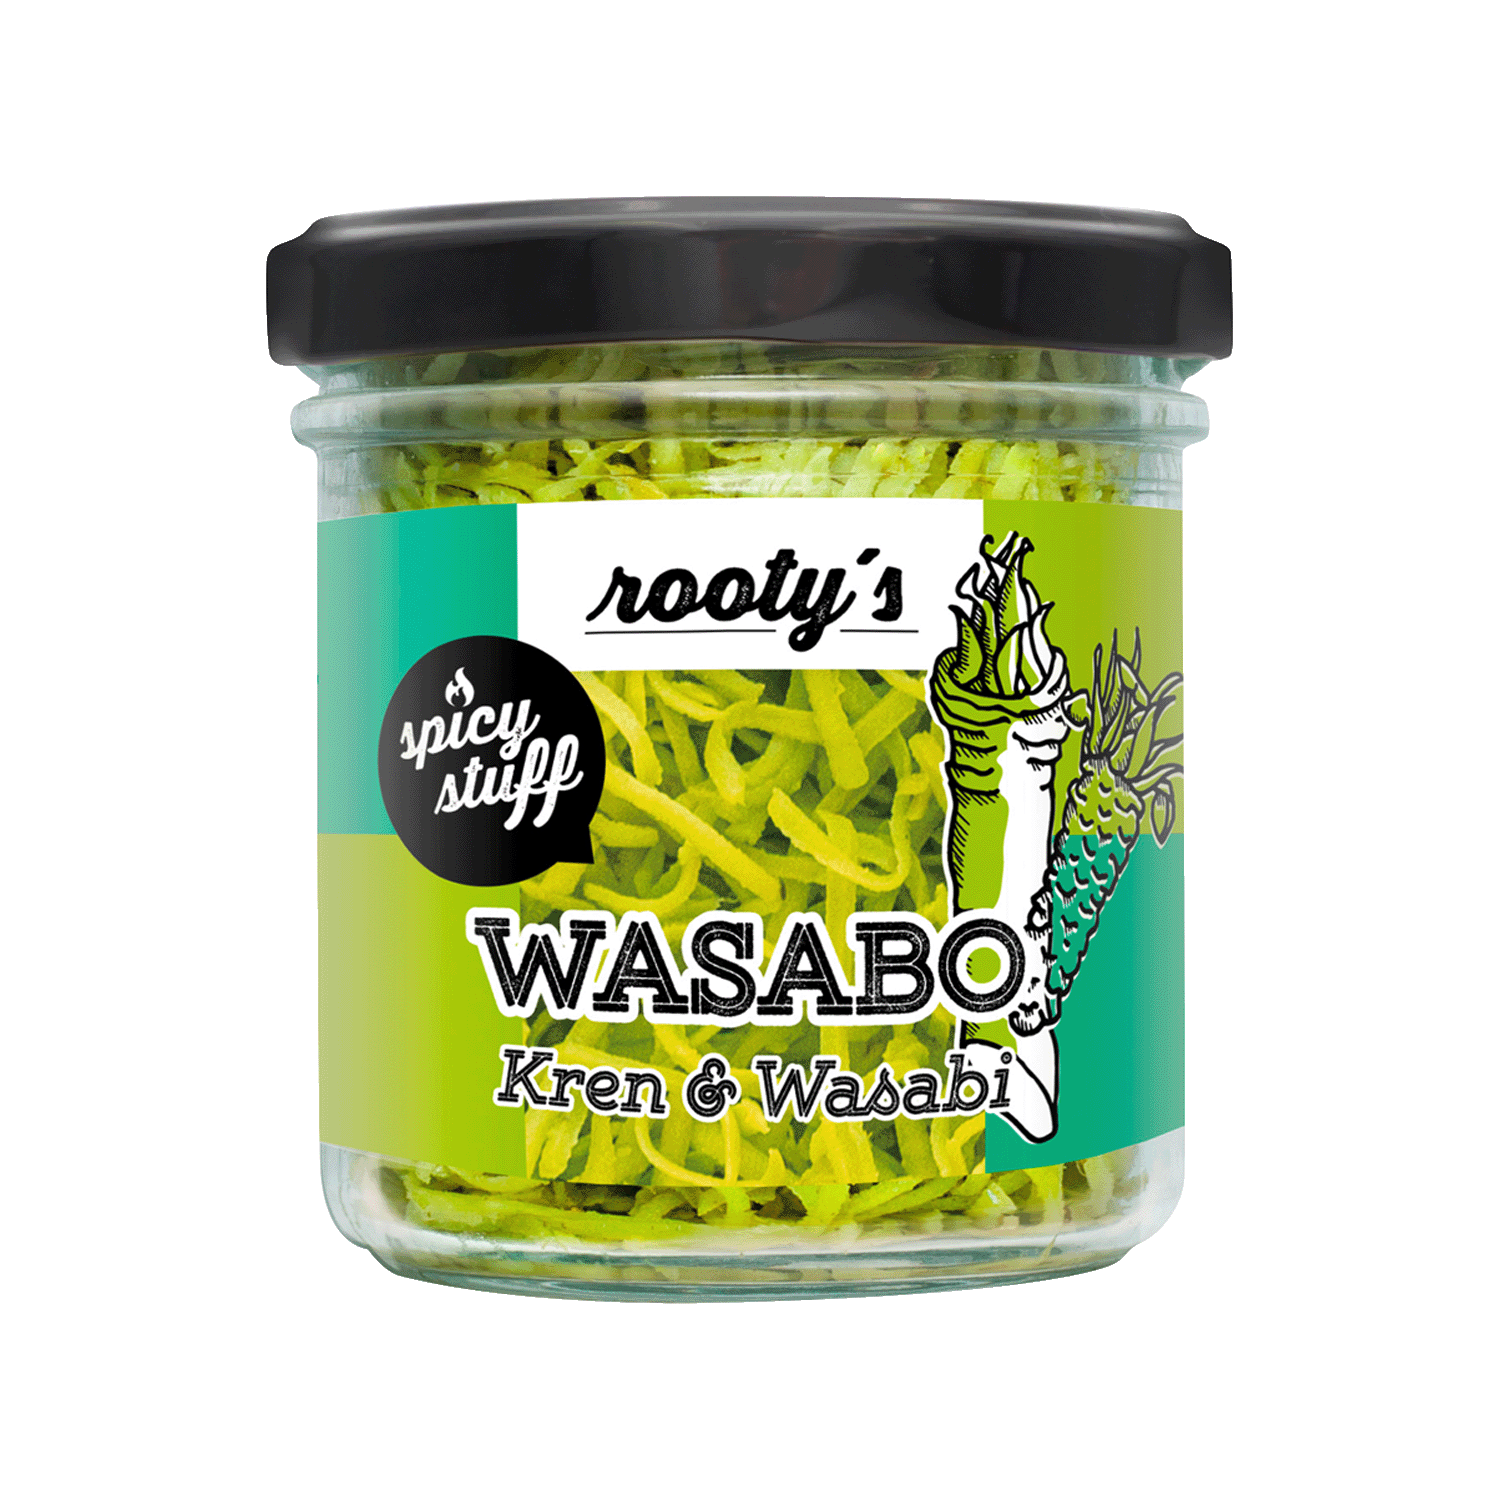 Wasabo Kren & Wasabi, 50g